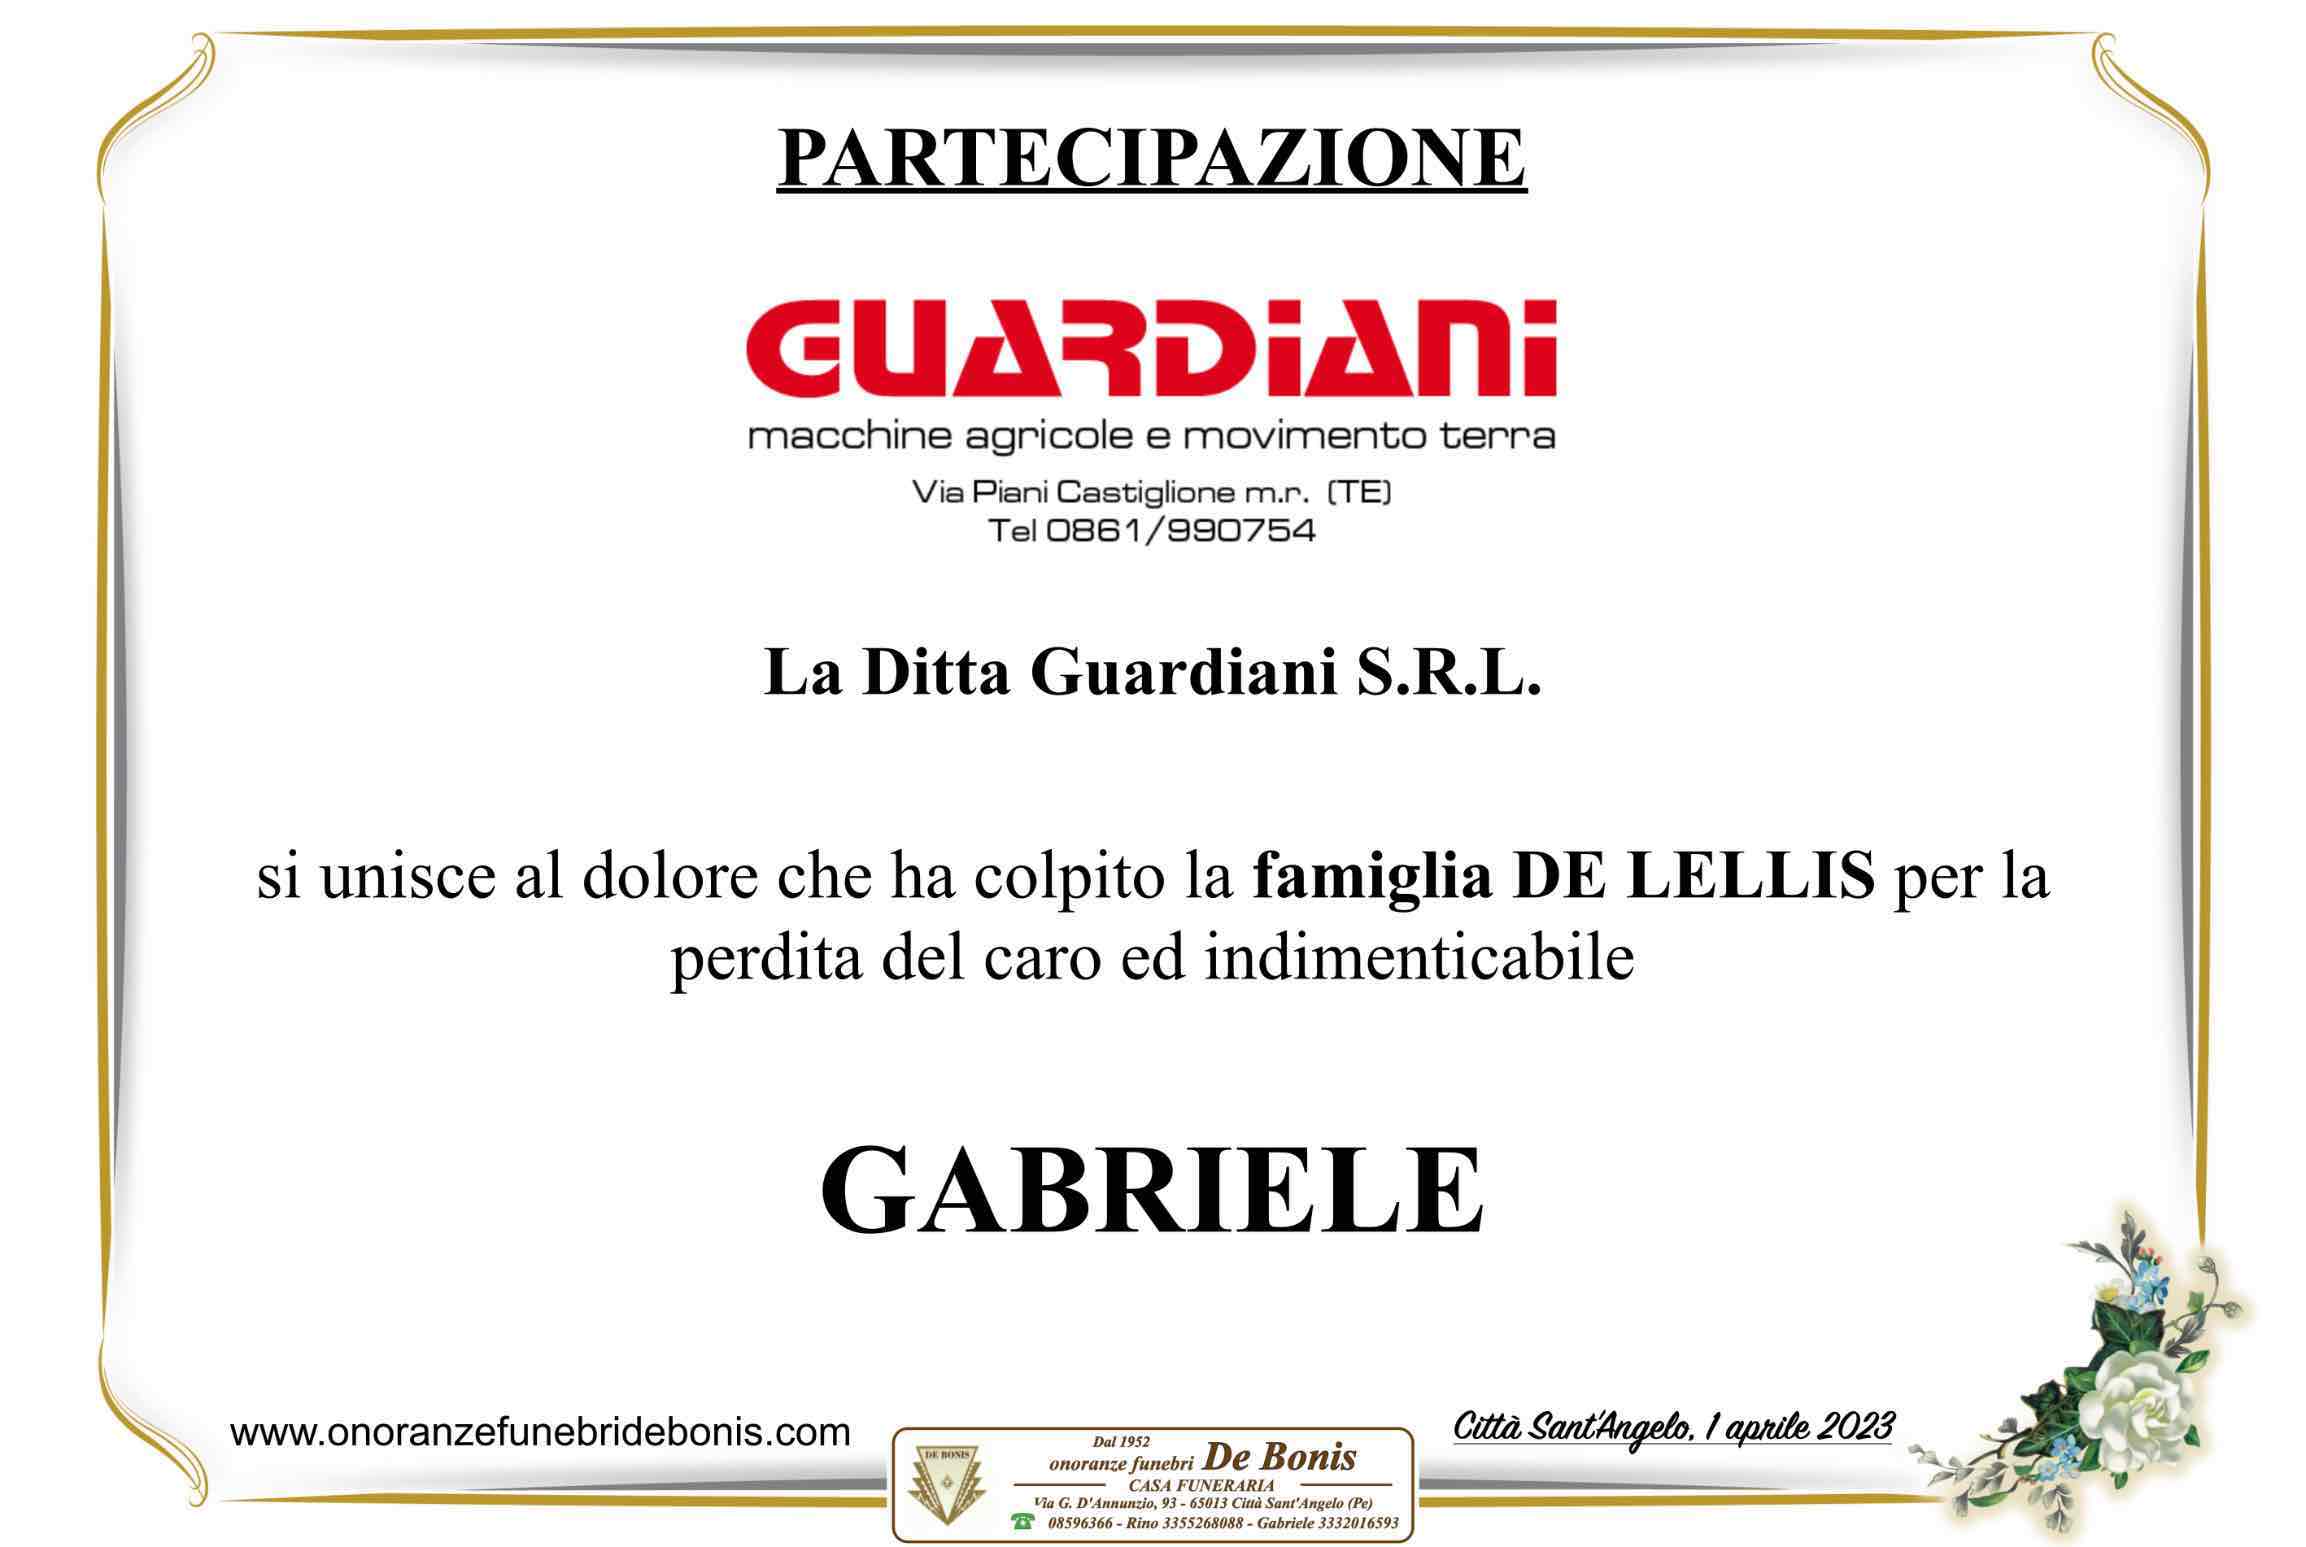 Gabriele De Lellis